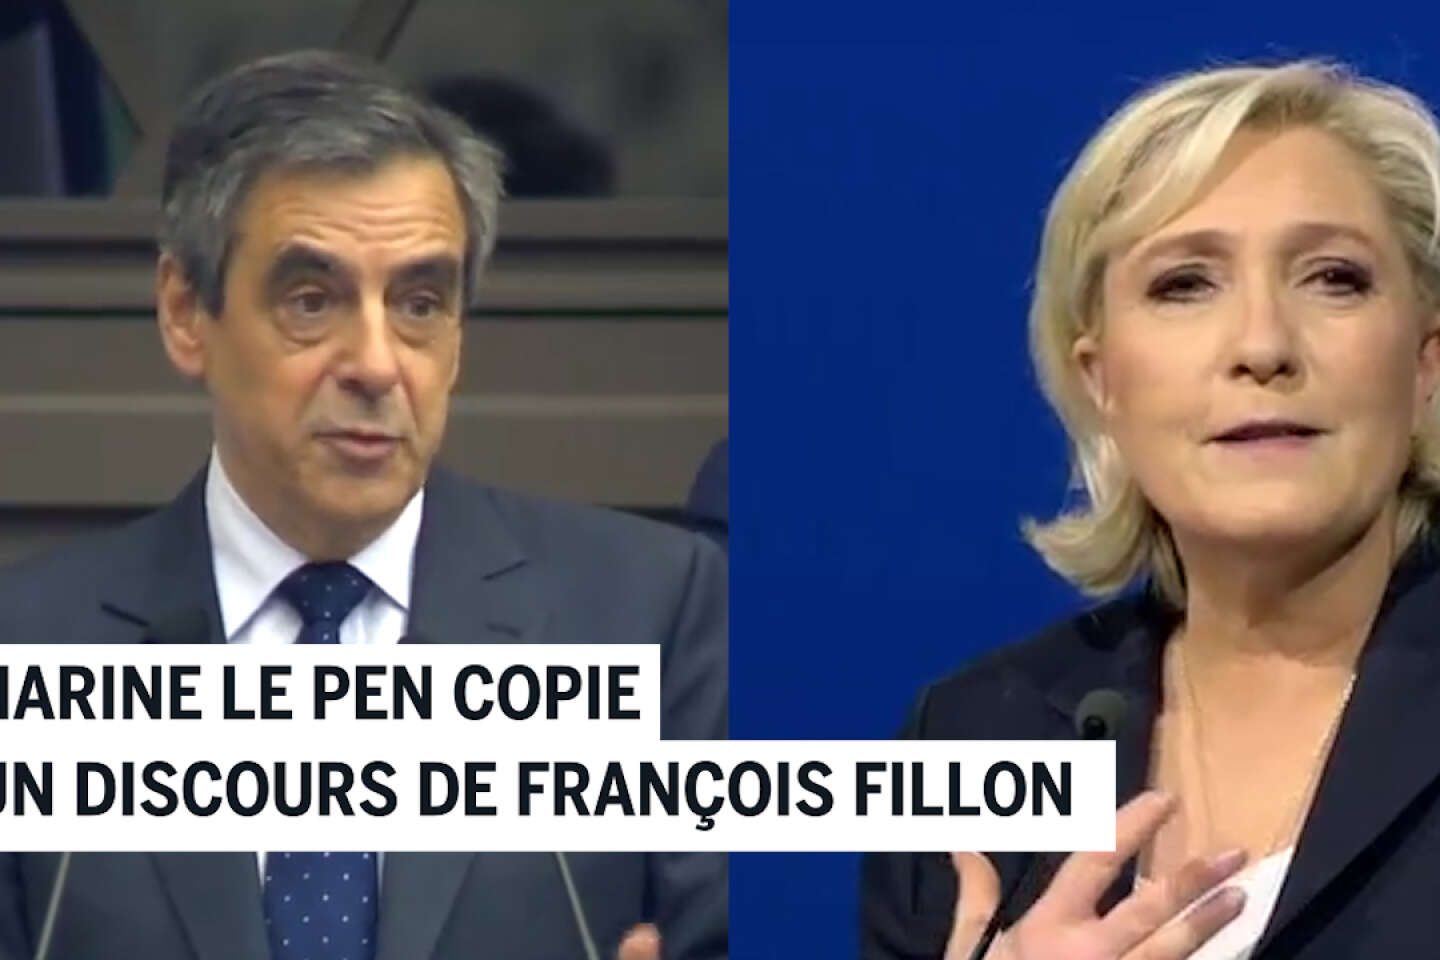 Vidéo. En images. Marine Le Pen copie un discours de François Fillon